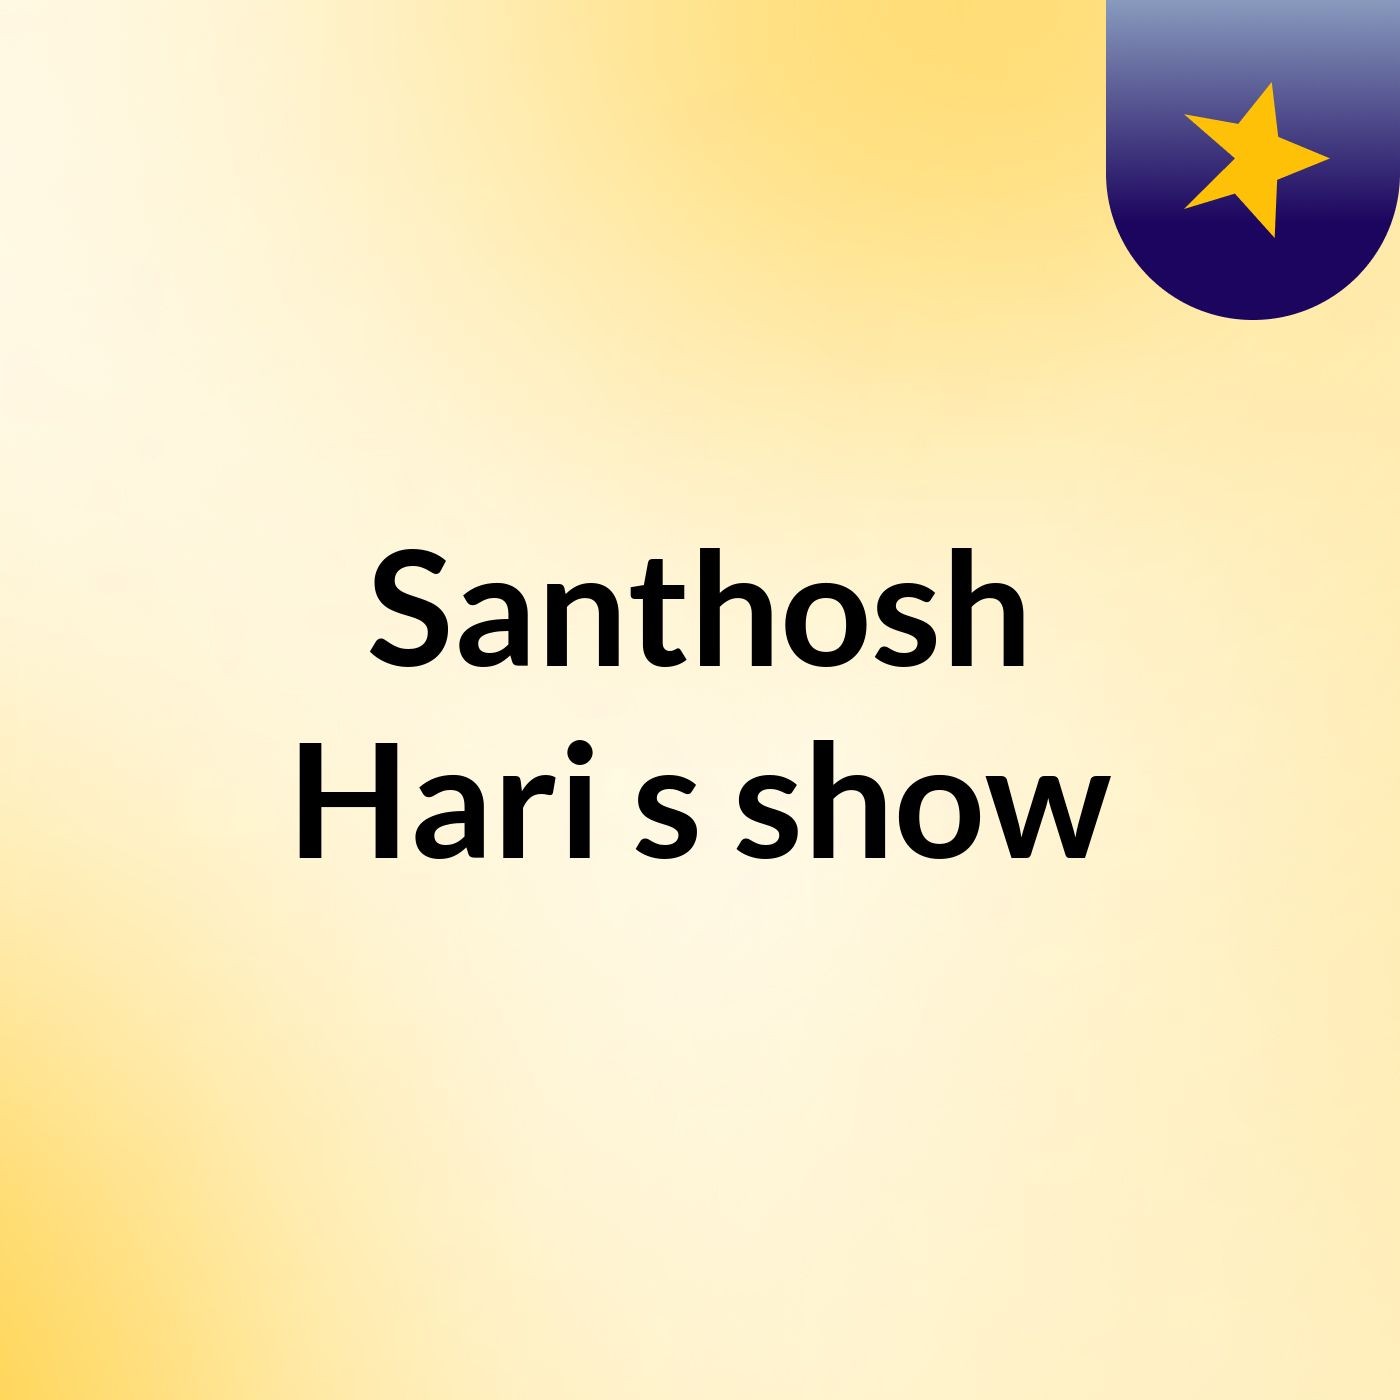 Santhosh Hari's show